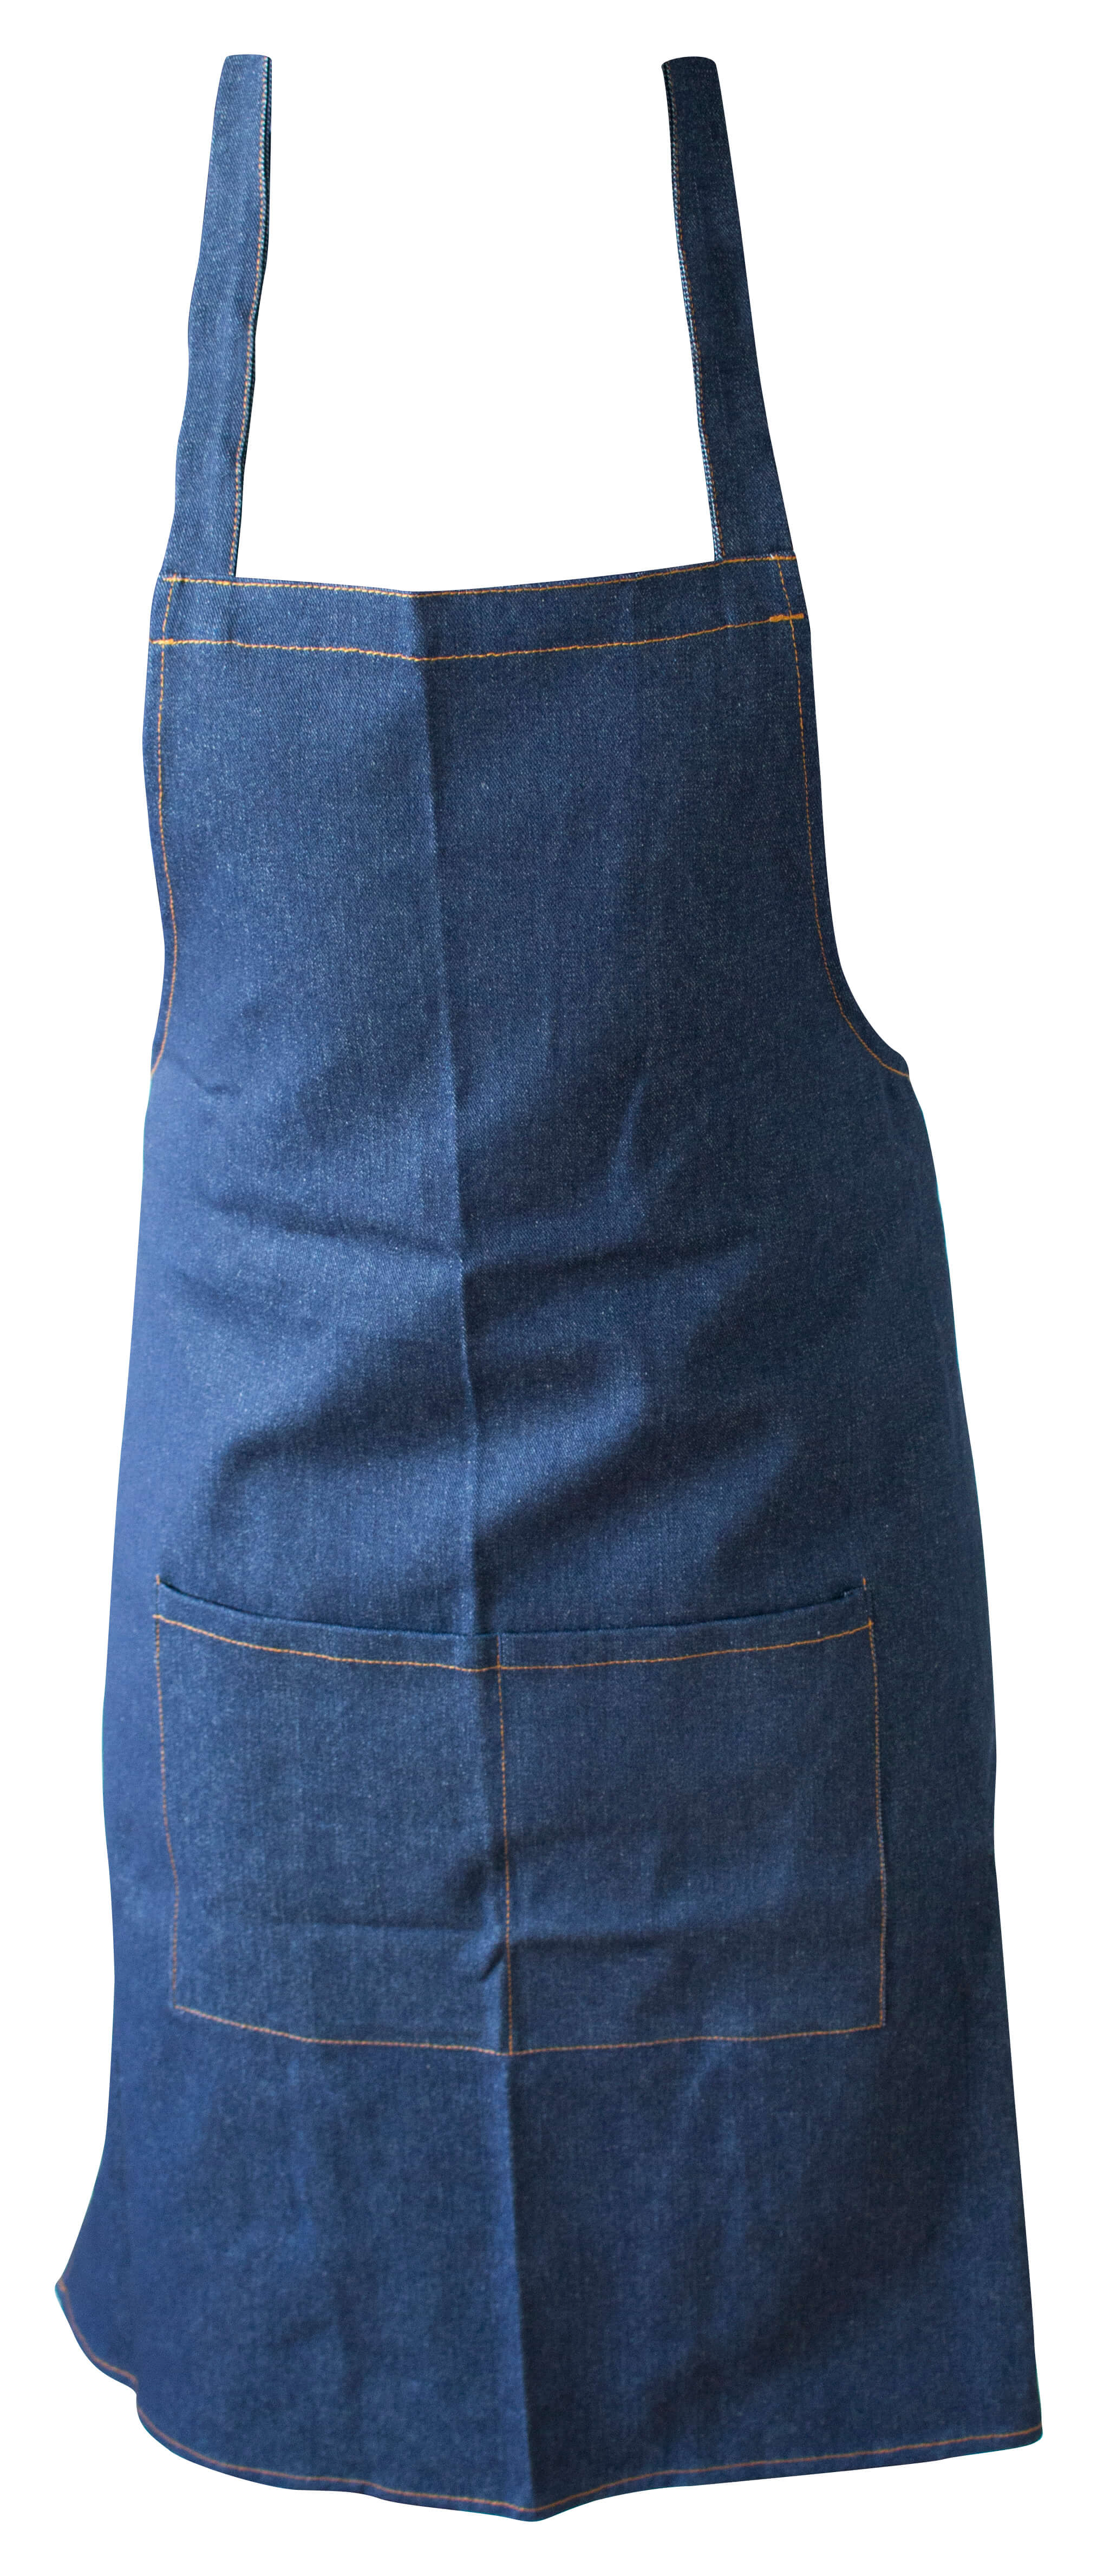 Bib apron, Jeans, 90x70cm - dark blue